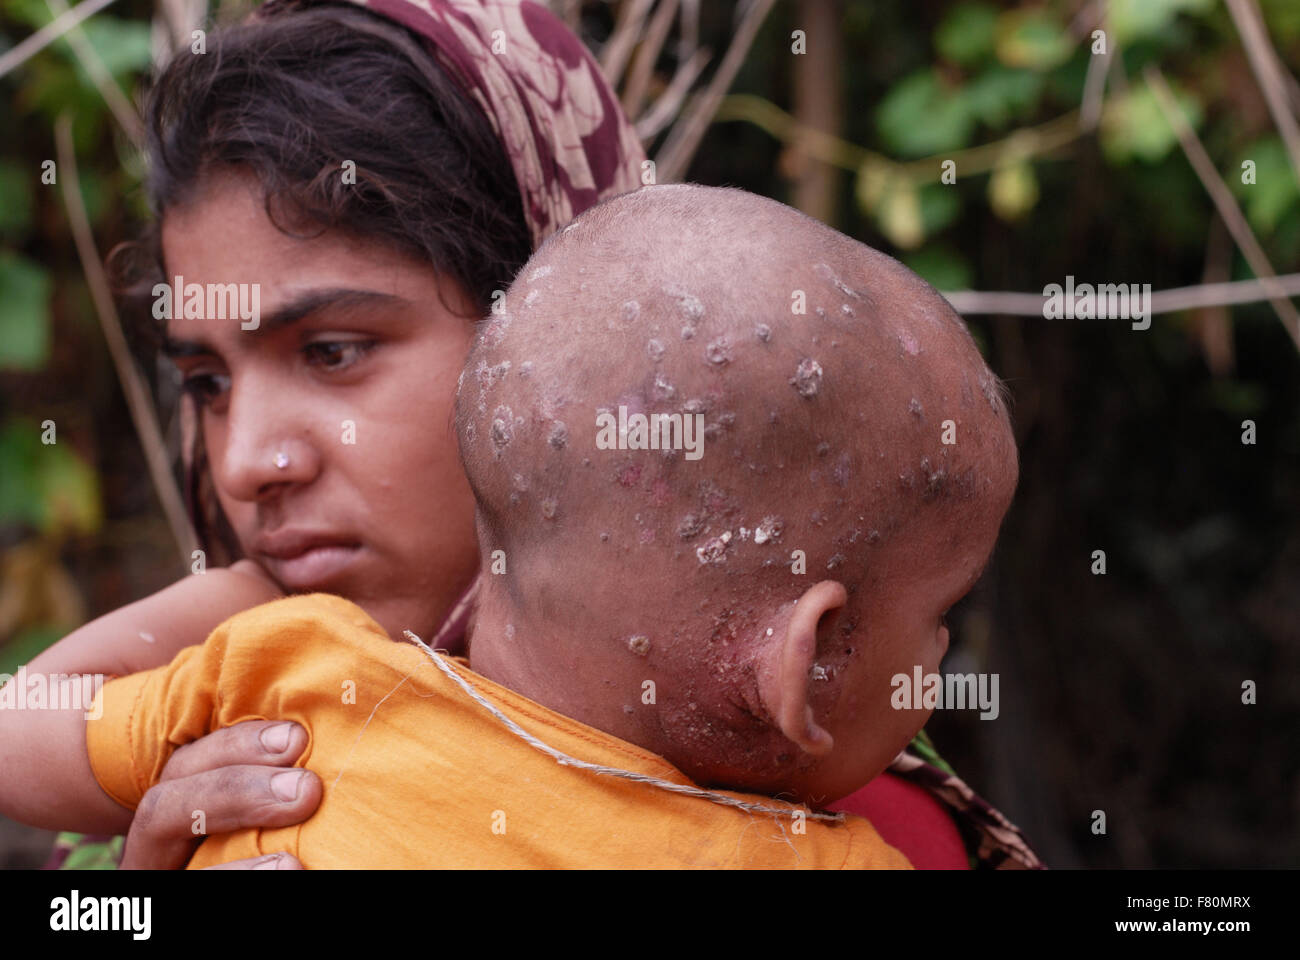 Colpite dalle alluvioni nord Bangladesh . Chamilly età 20 con baby Shuboh invecchiata 16 mesi con infezione della pelle da acqua contaminata. Foto Stock